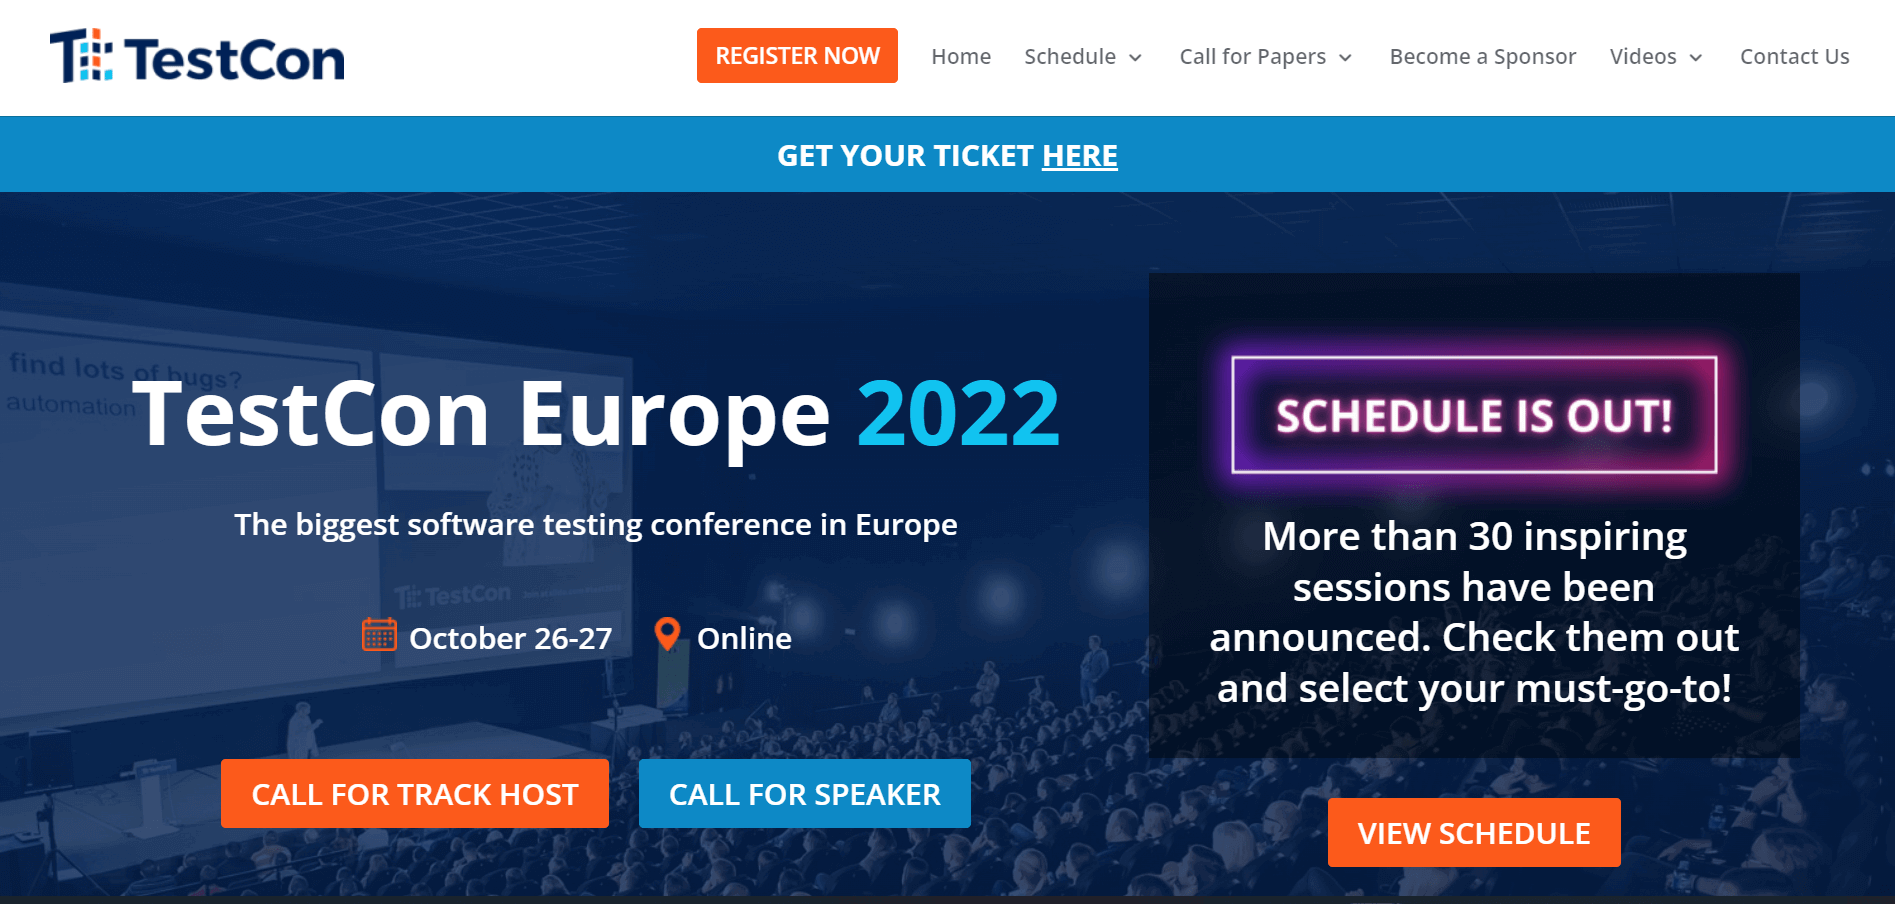 TestCon Europe 2022